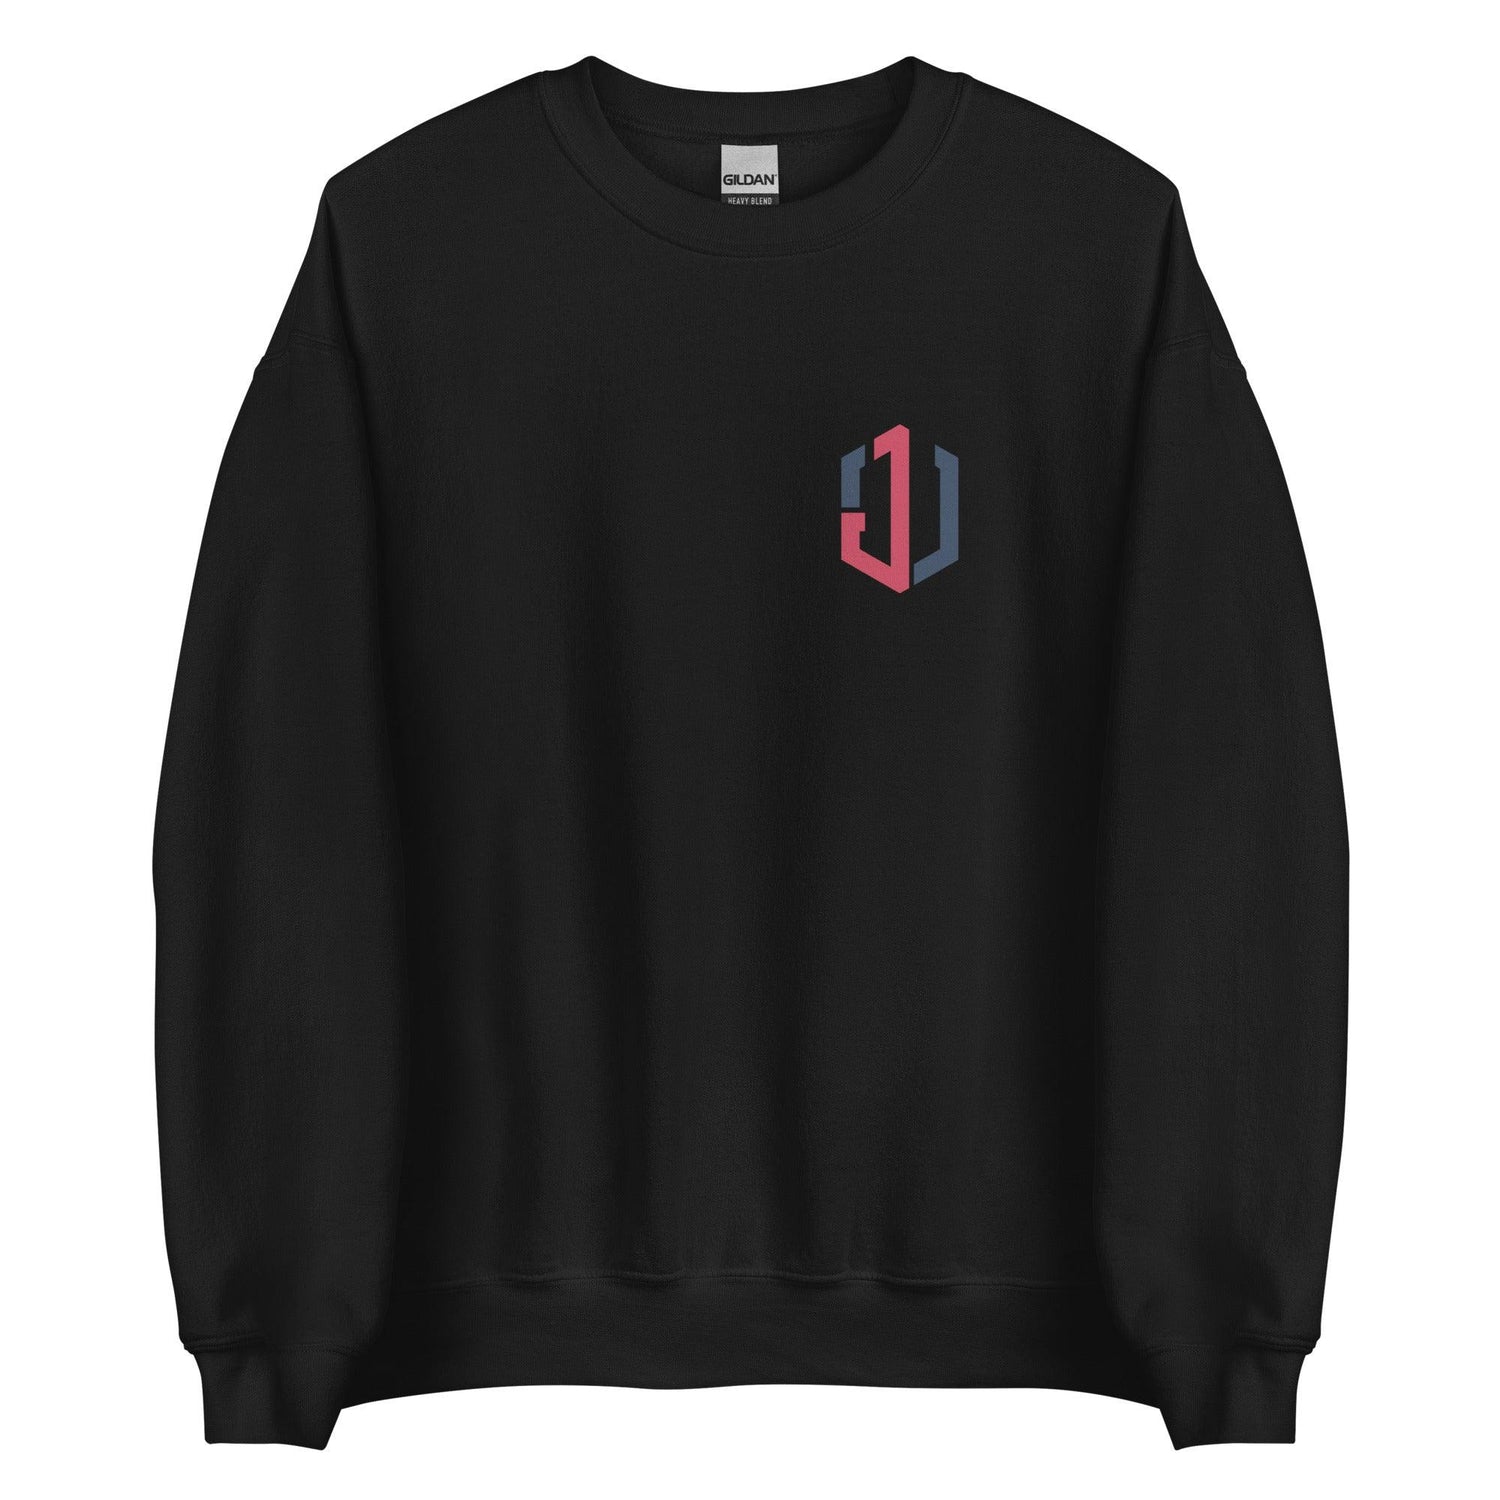 Jordan Walker “JW” Sweatshirt - Fan Arch